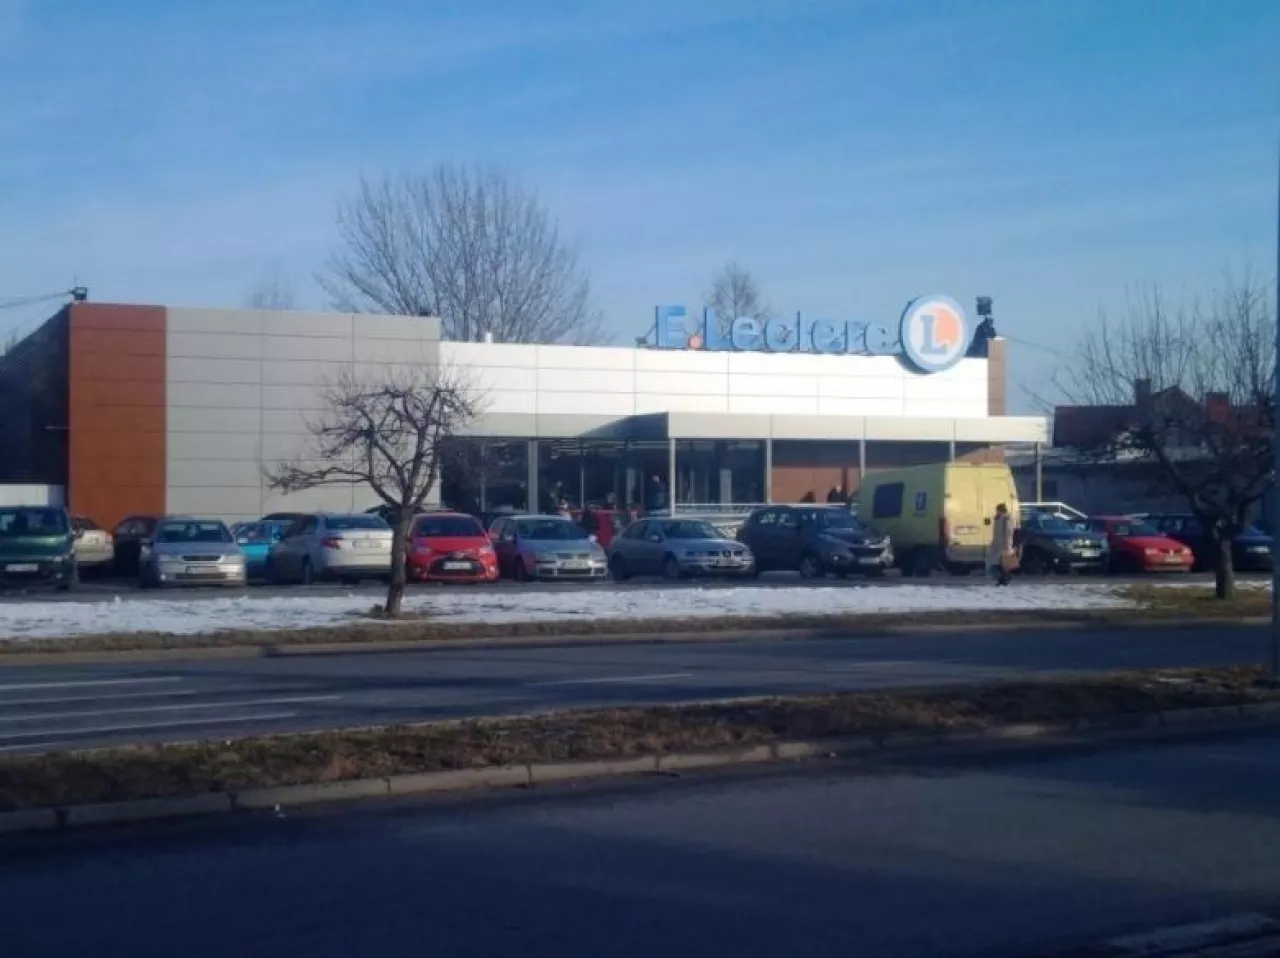 Nowy supermarket E.Leclerc w Tarnowie, otwarty w styczniu 2017 r. (fot. E.Leclerc)